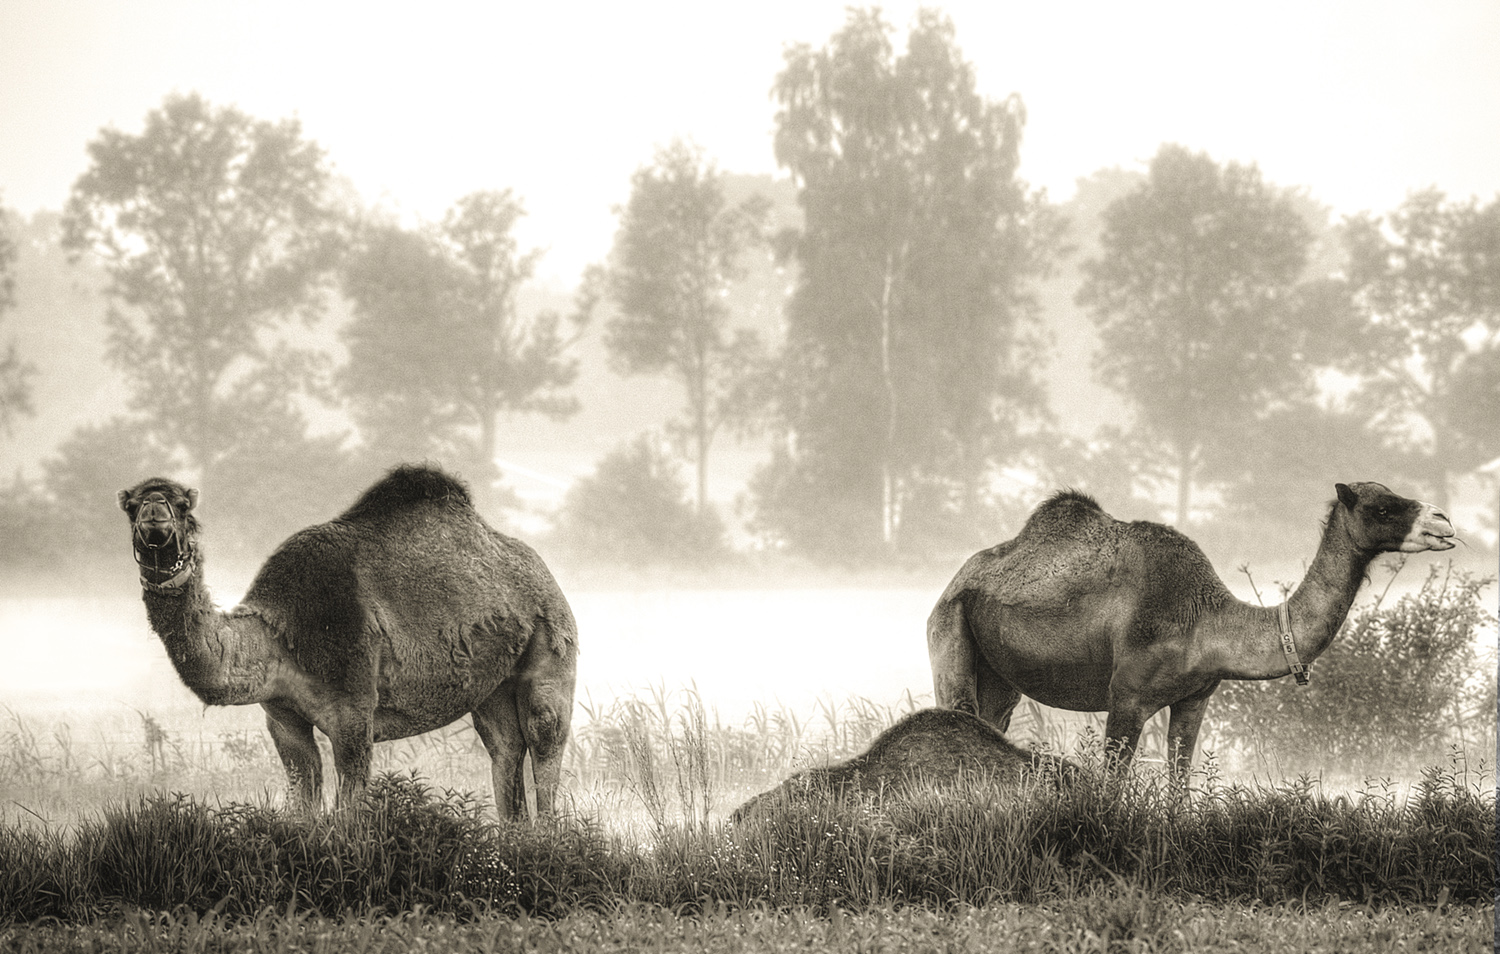 Berlicum-kamelen-chamels-landschap-kamelenboerderij2